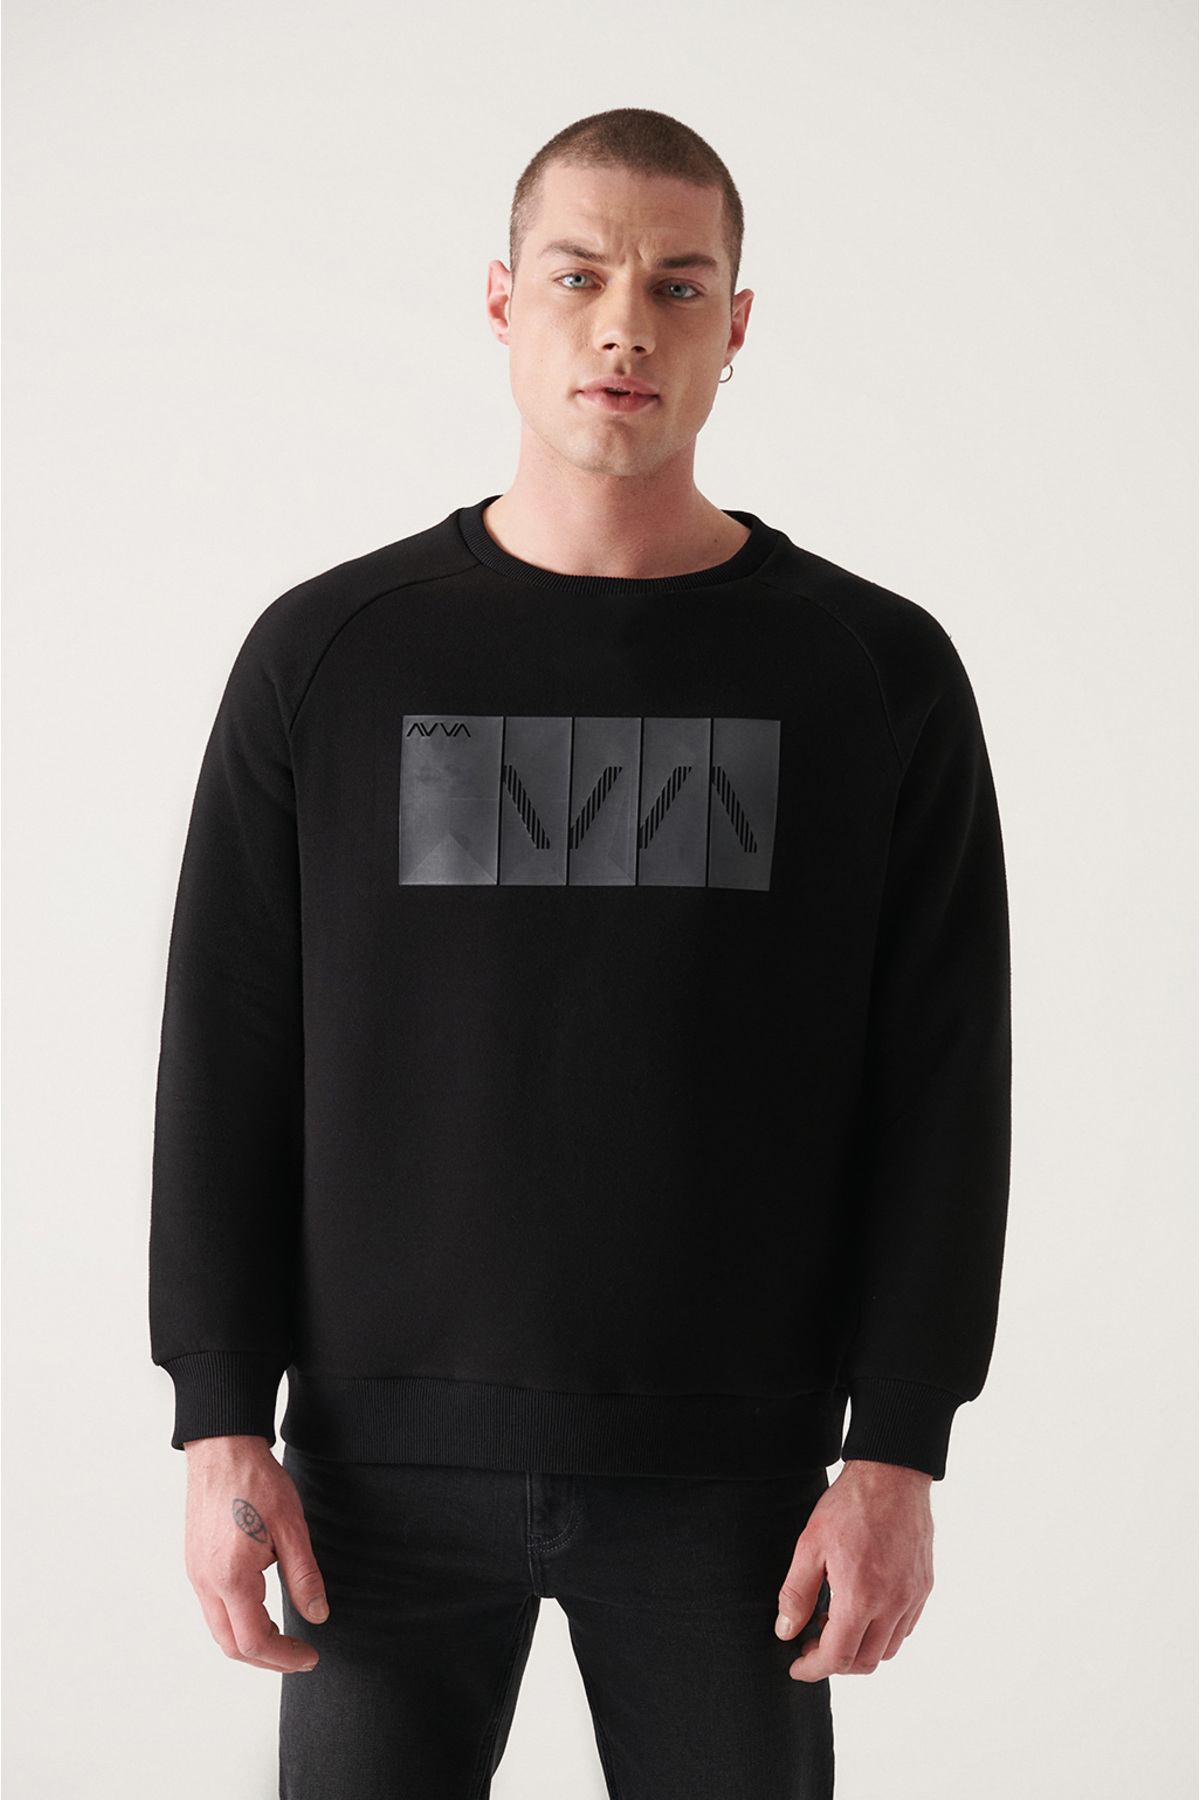 Avva Men's Black Crew Neck 3 Thread Fleece Printed Standartfit Regular Fit Sweatshirt